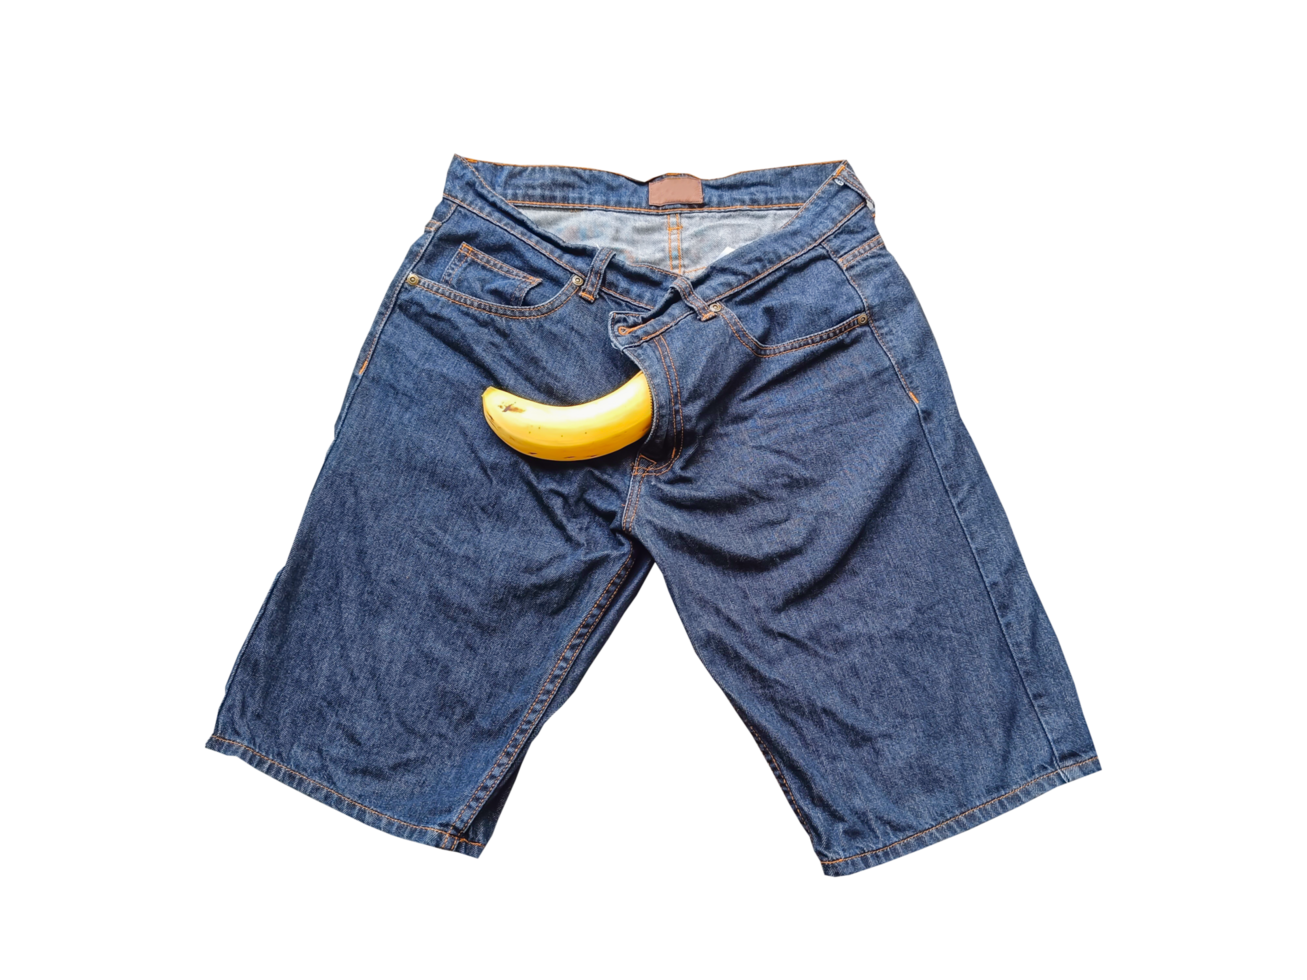 groß Banane kleben aus von Herren Jeans. Sex Konzept auf ein transparent Hintergrund png